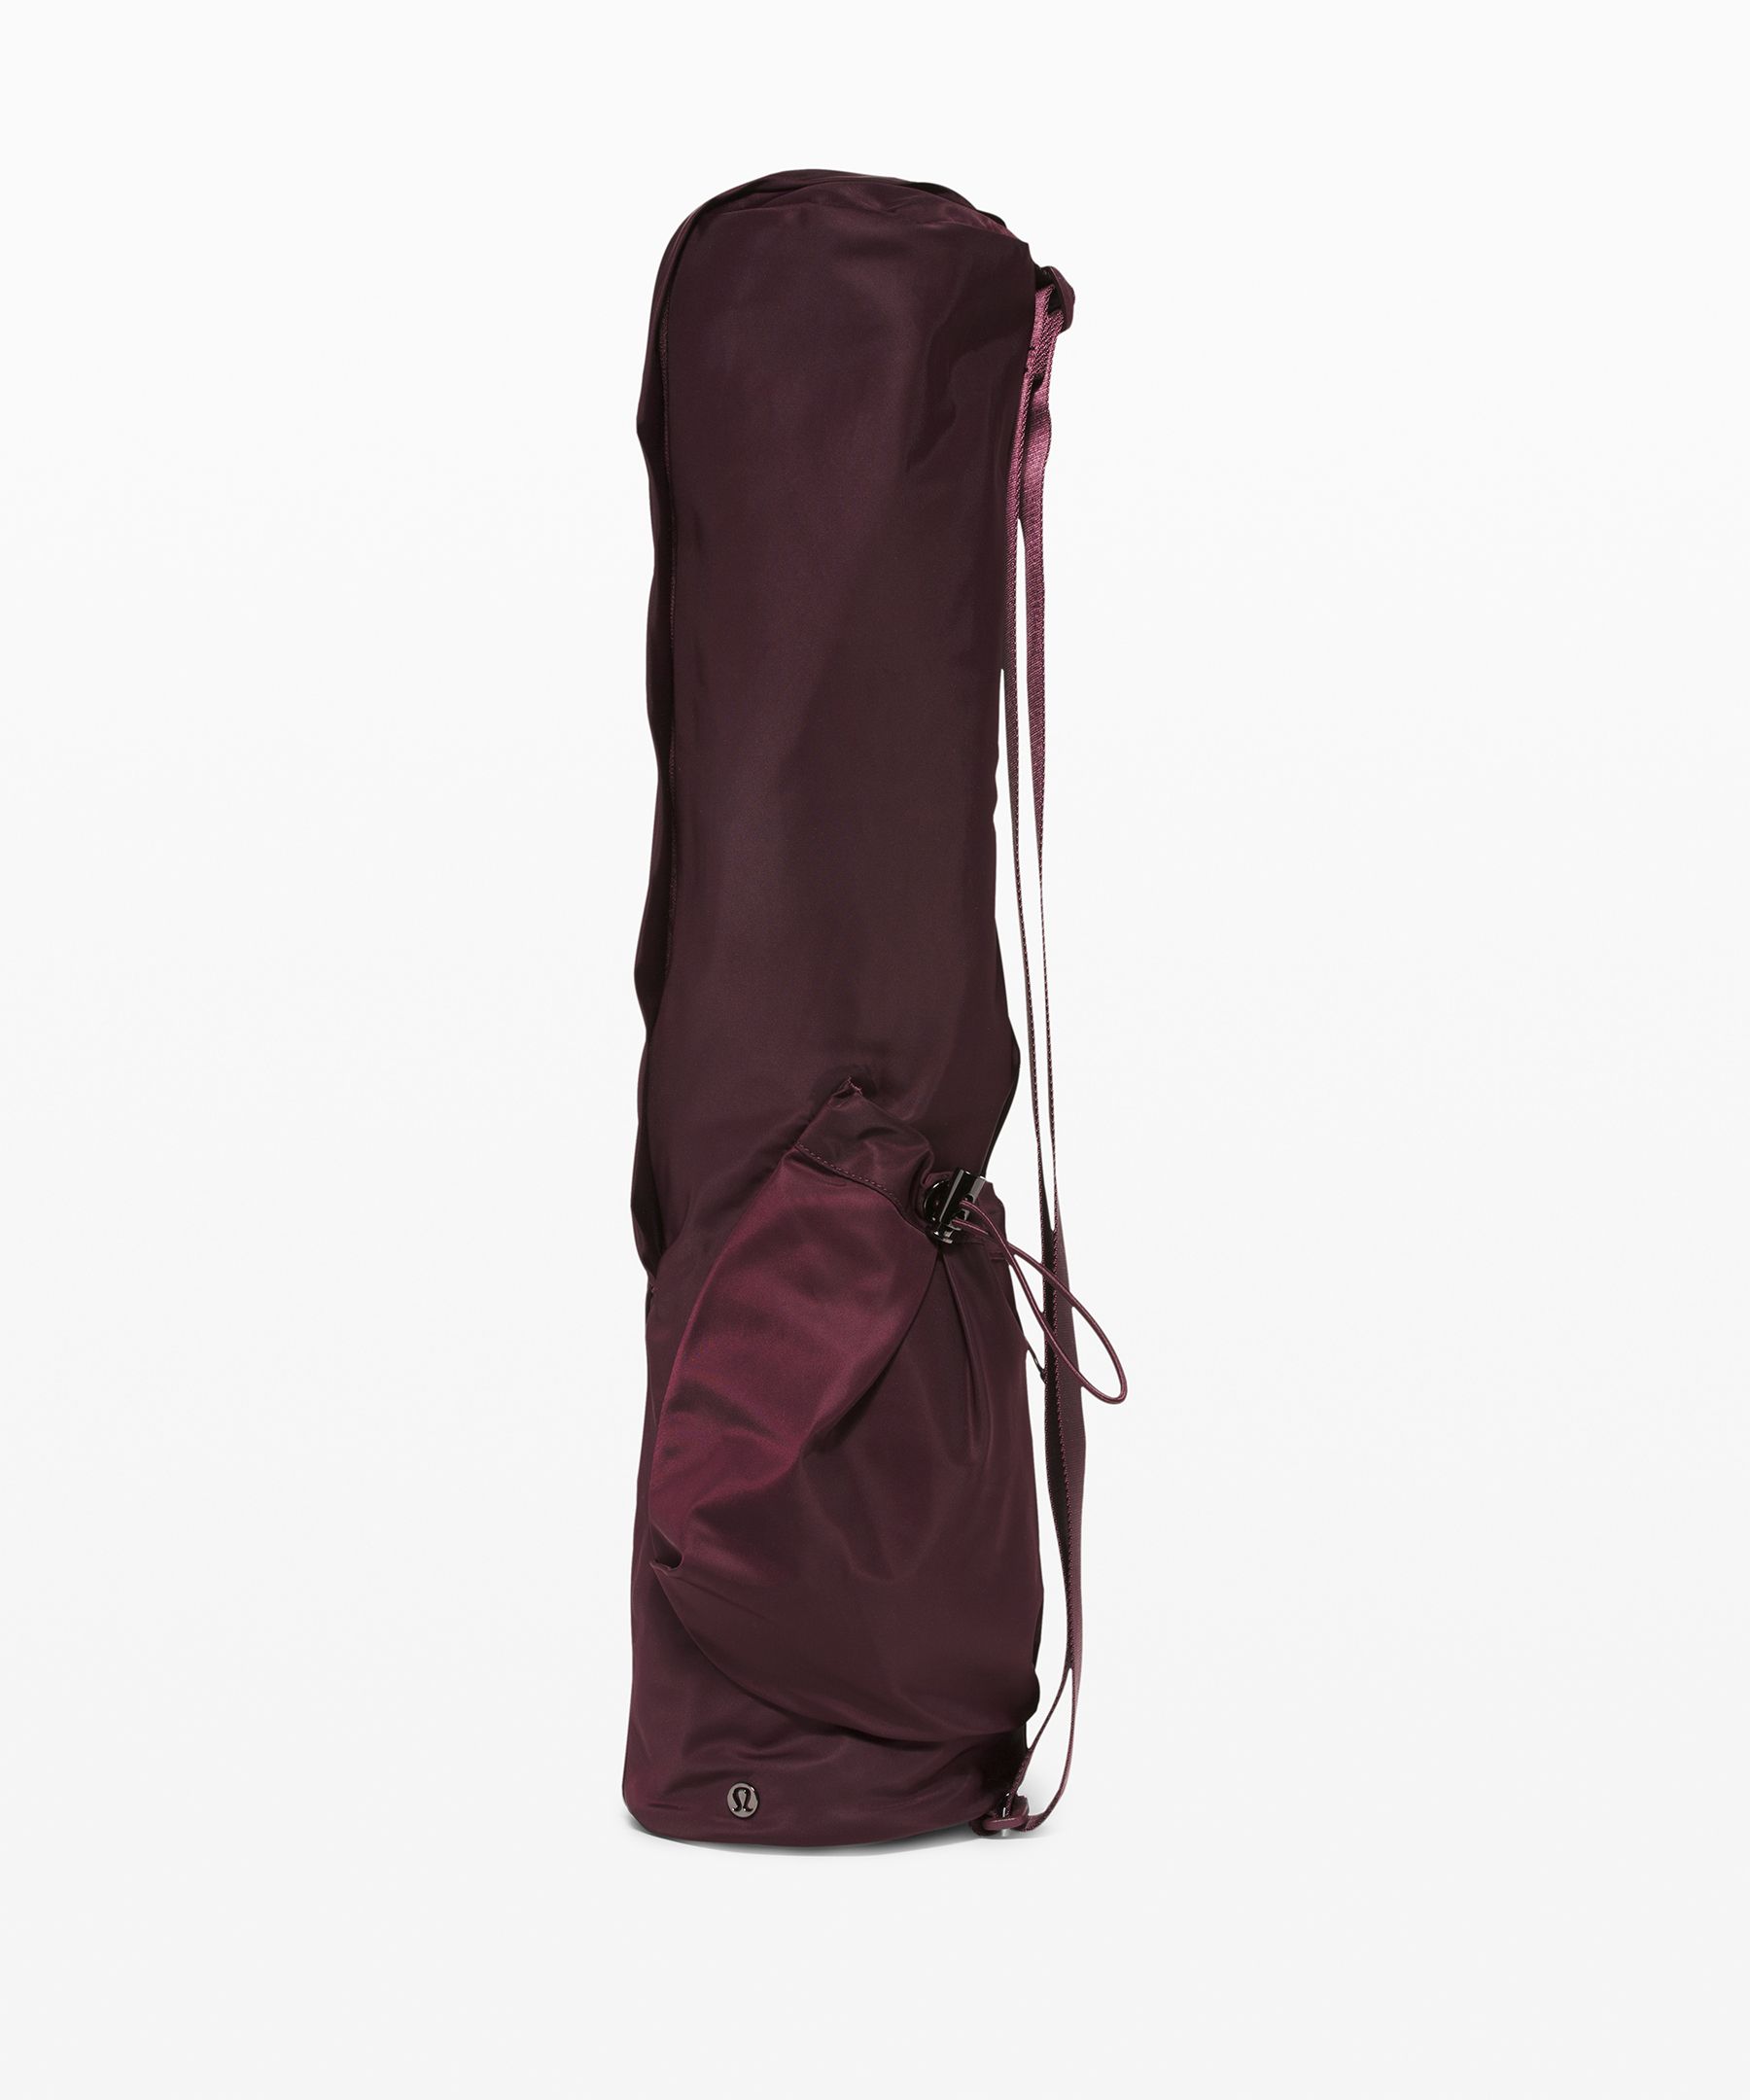 Lululemon: the Yoga Mat Bag